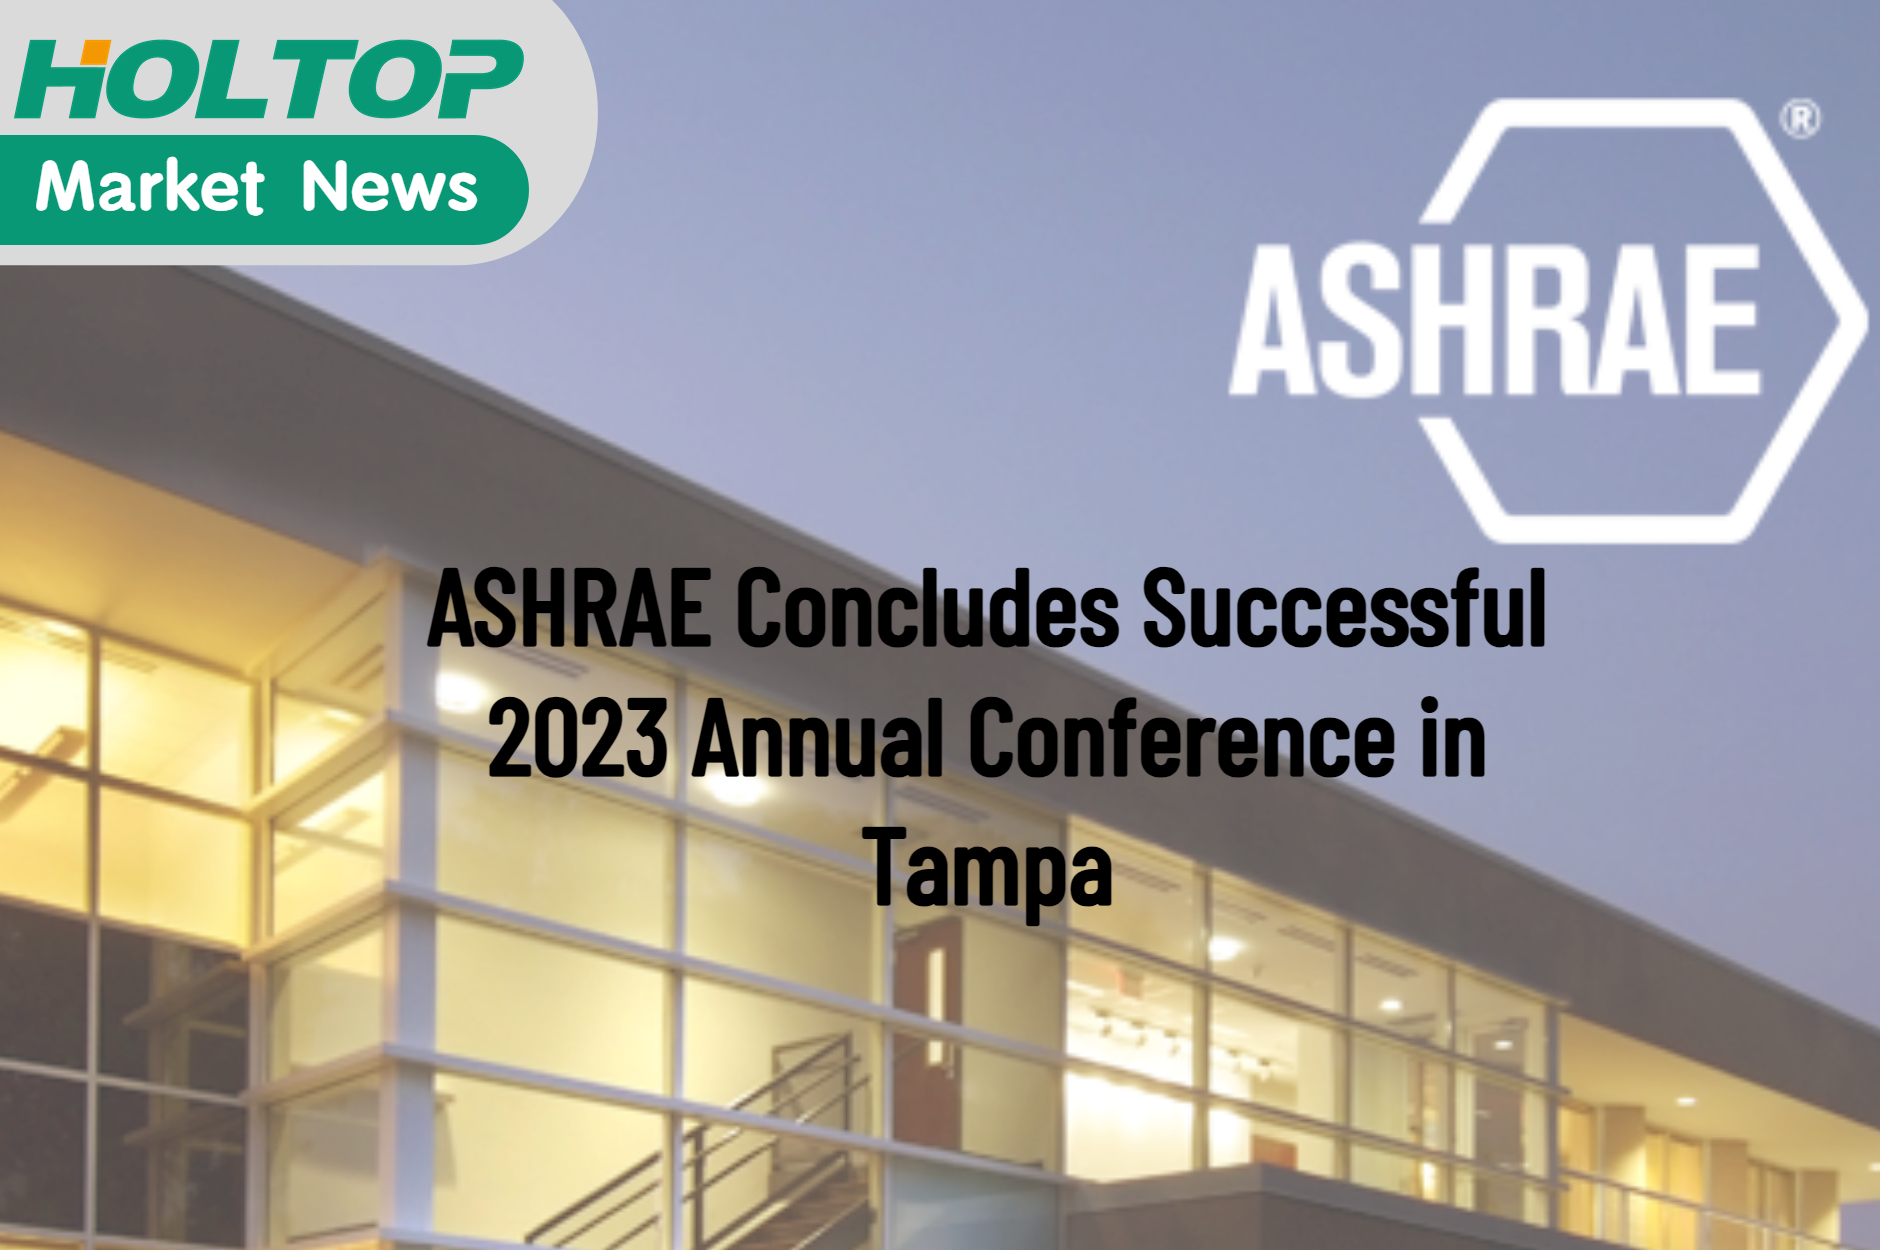 ASHRAE schließt Jahreskonferenz 2023 in Tampa erfolgreich ab